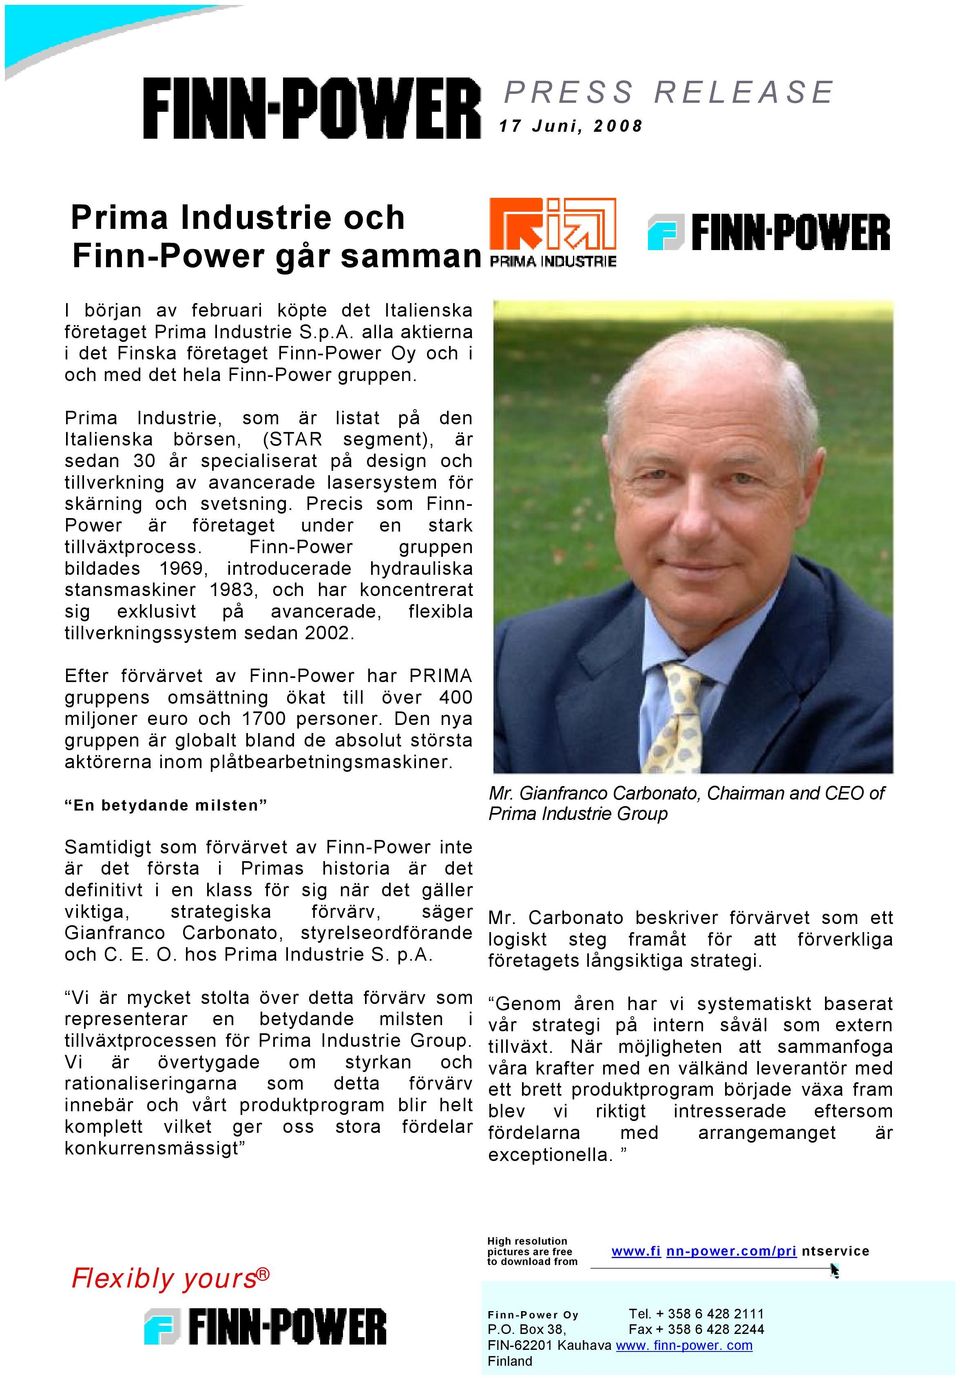 Precis som Finn- Power är företaget under en stark tillväxtprocess.